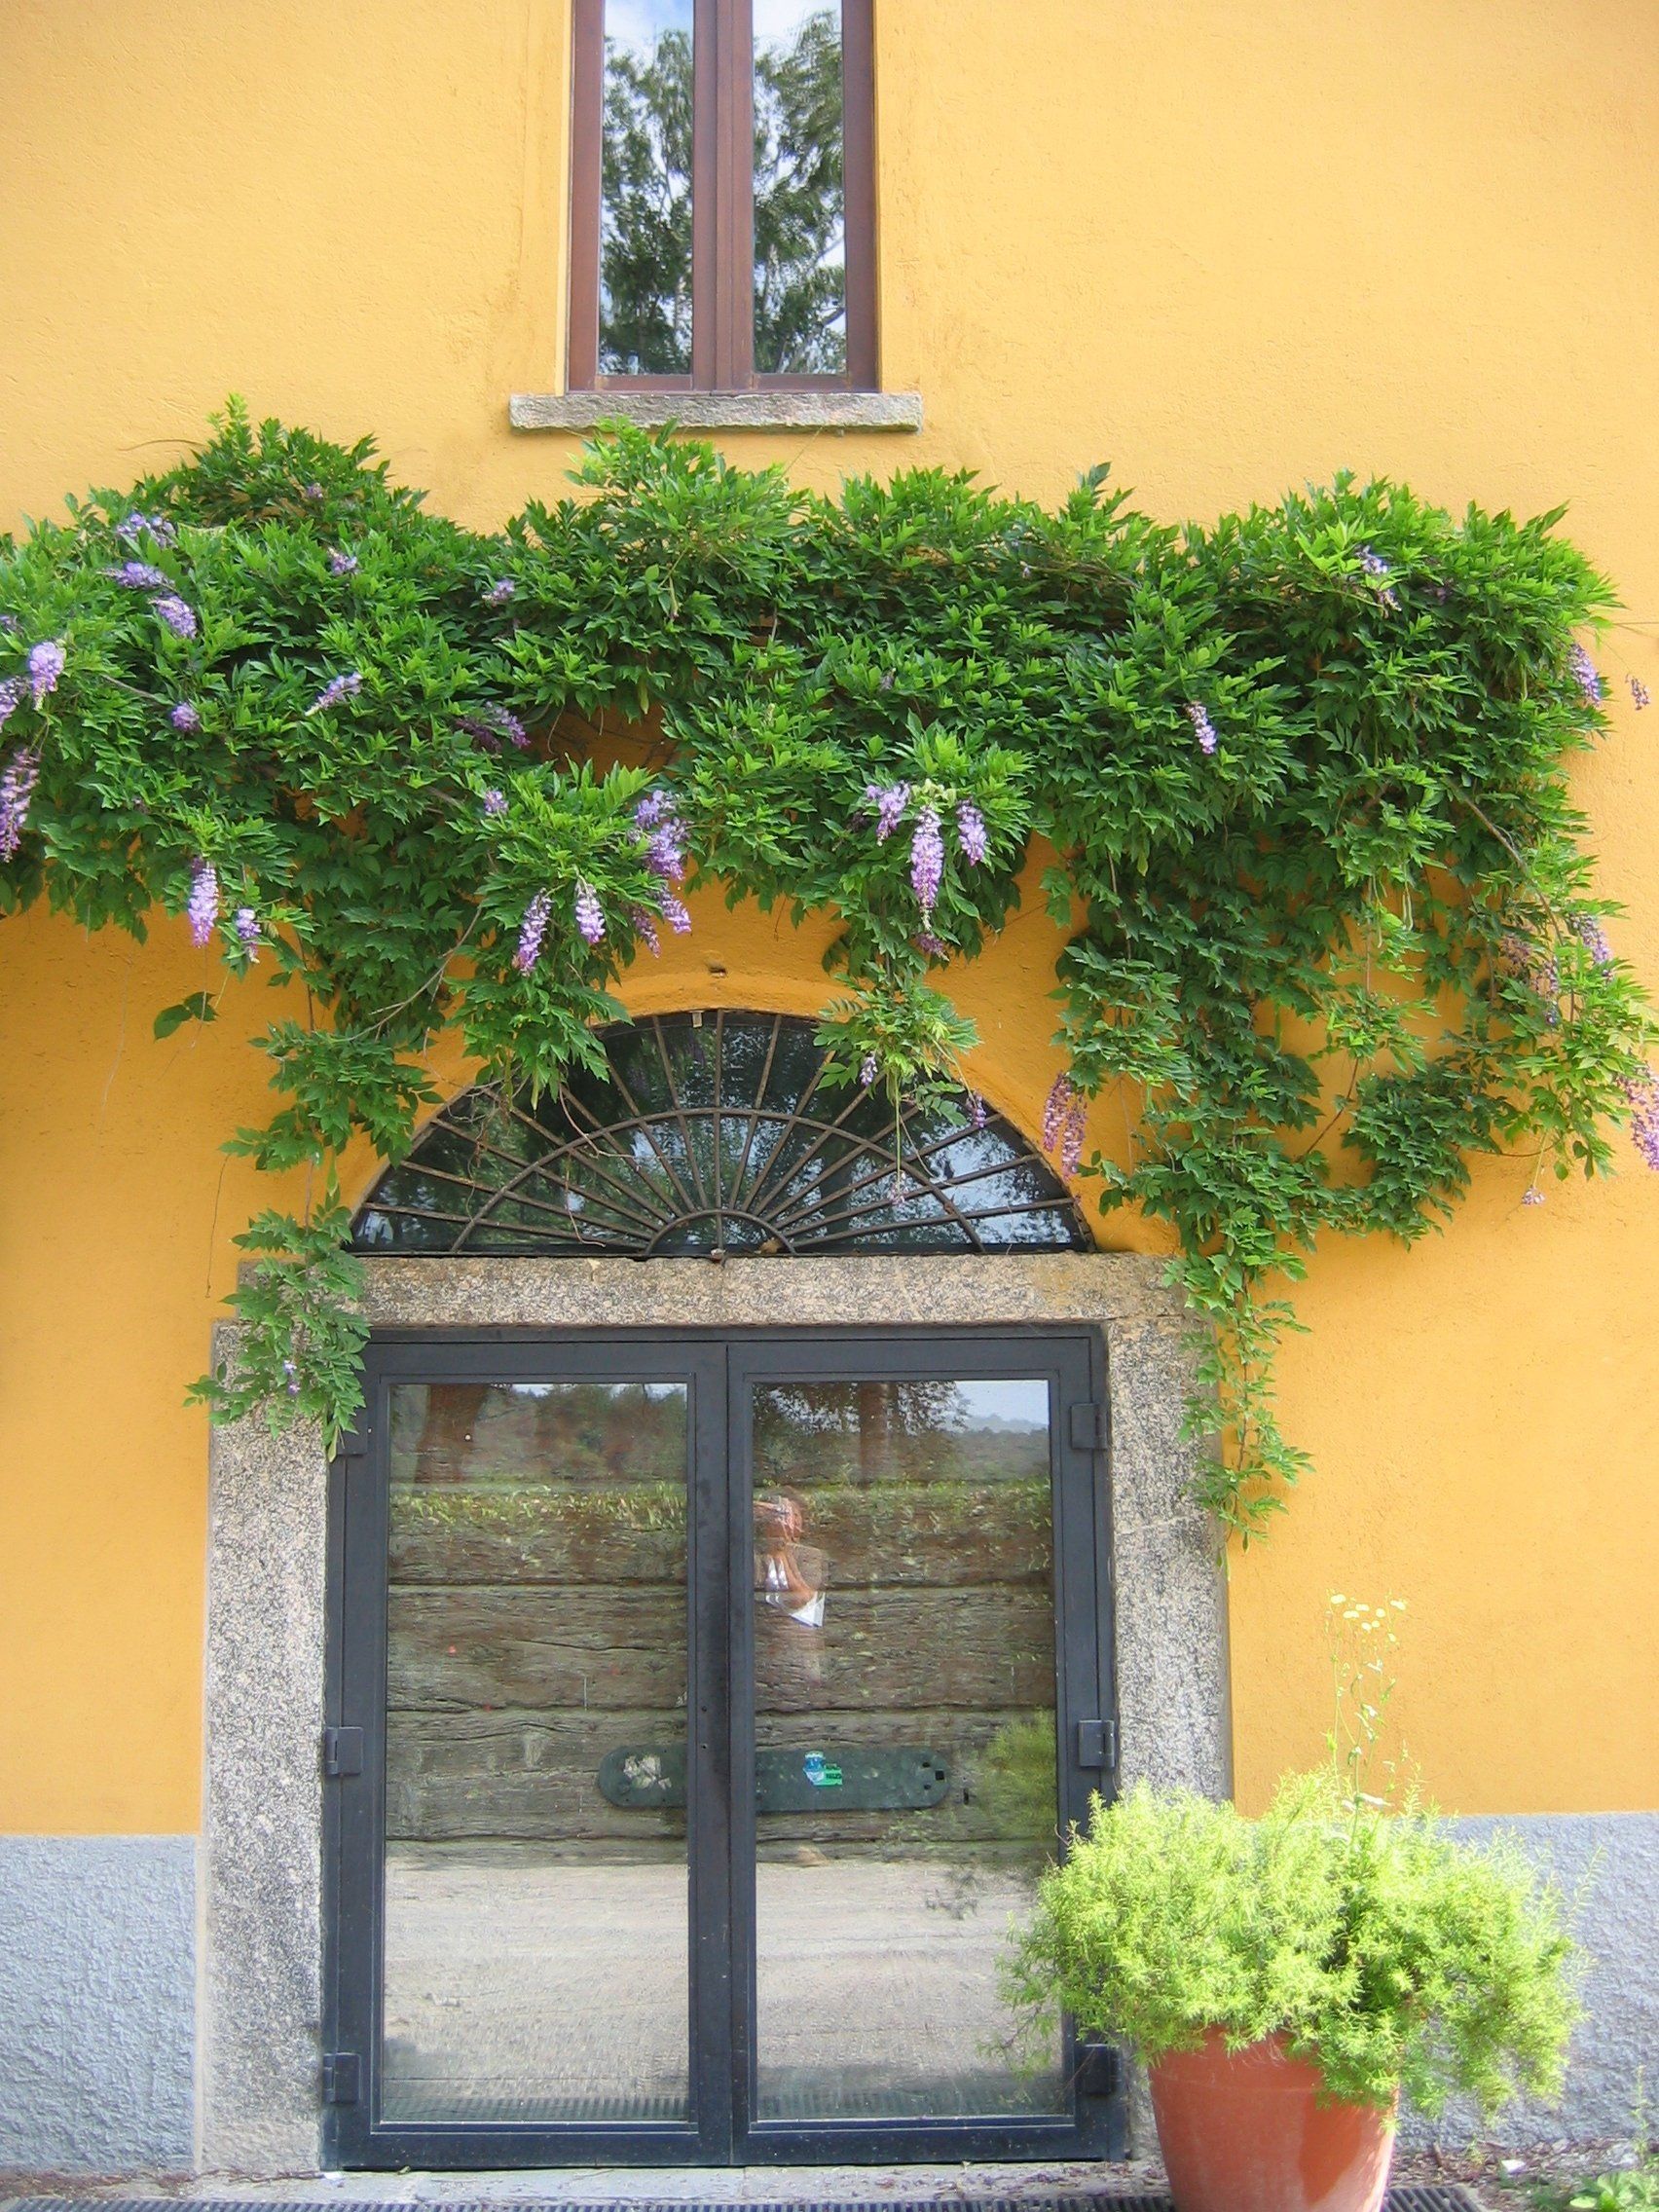 ingresso di una casa con sopra una pianta rampicante